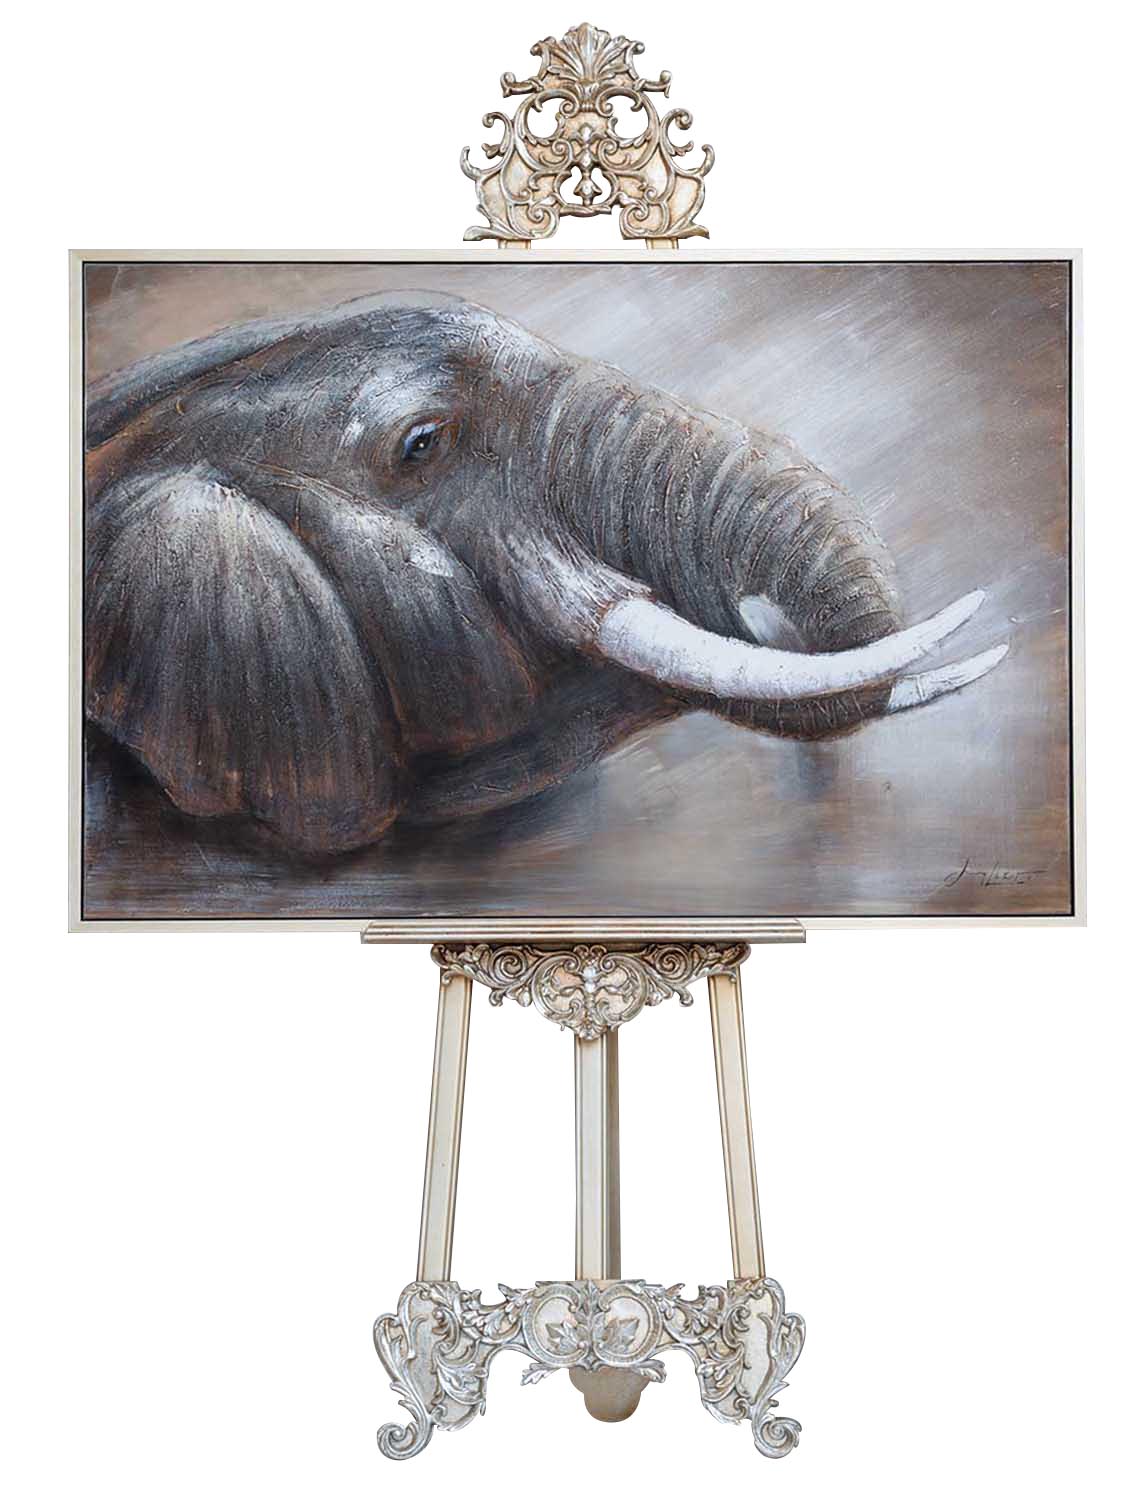 Riesen Original Ölgemälde Elefant Afrika Gemälde Bild mit Rahmen 124x84cm 